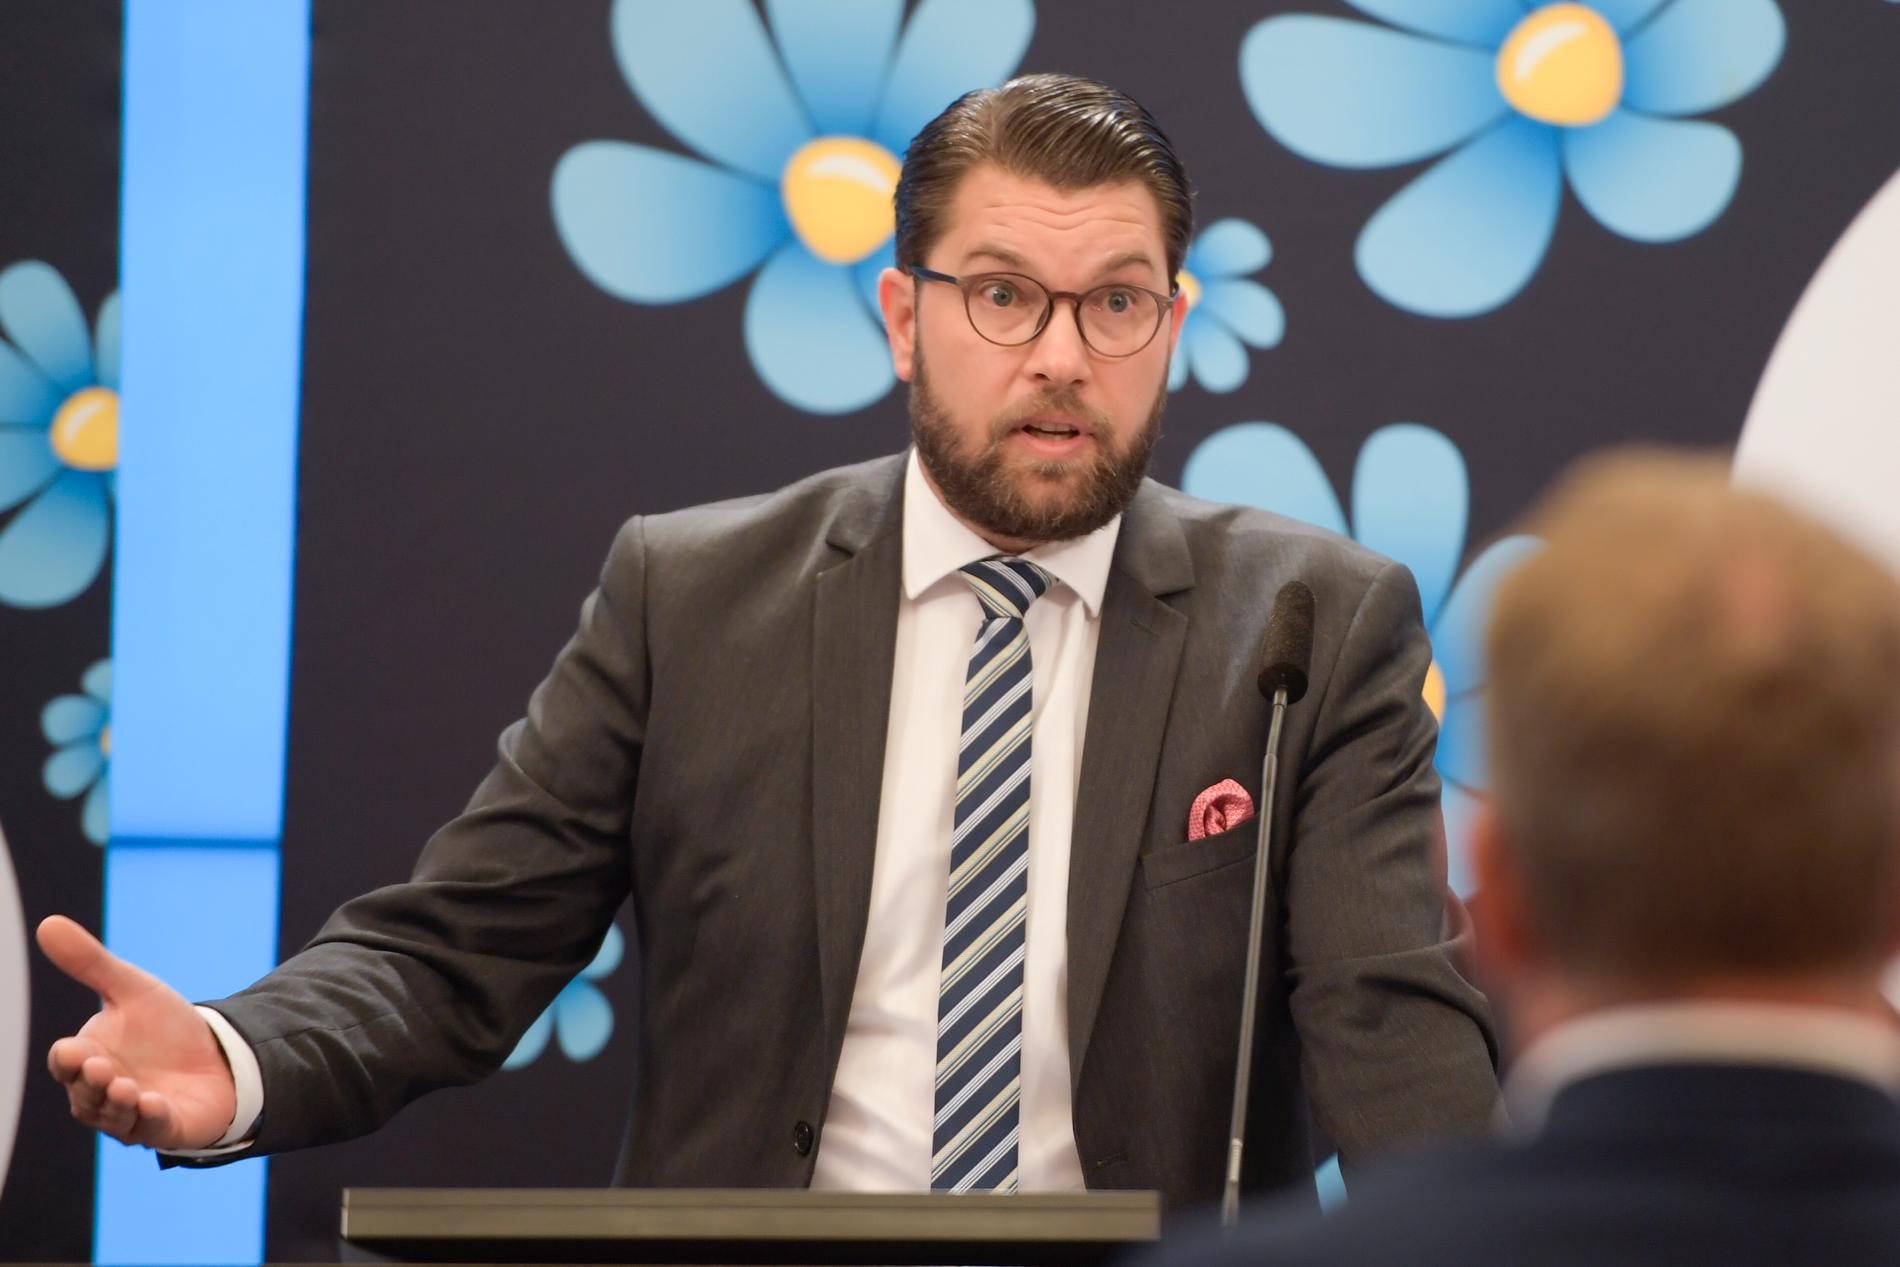 Sverigedemokraternas partiledare Jimmie Åkesson.